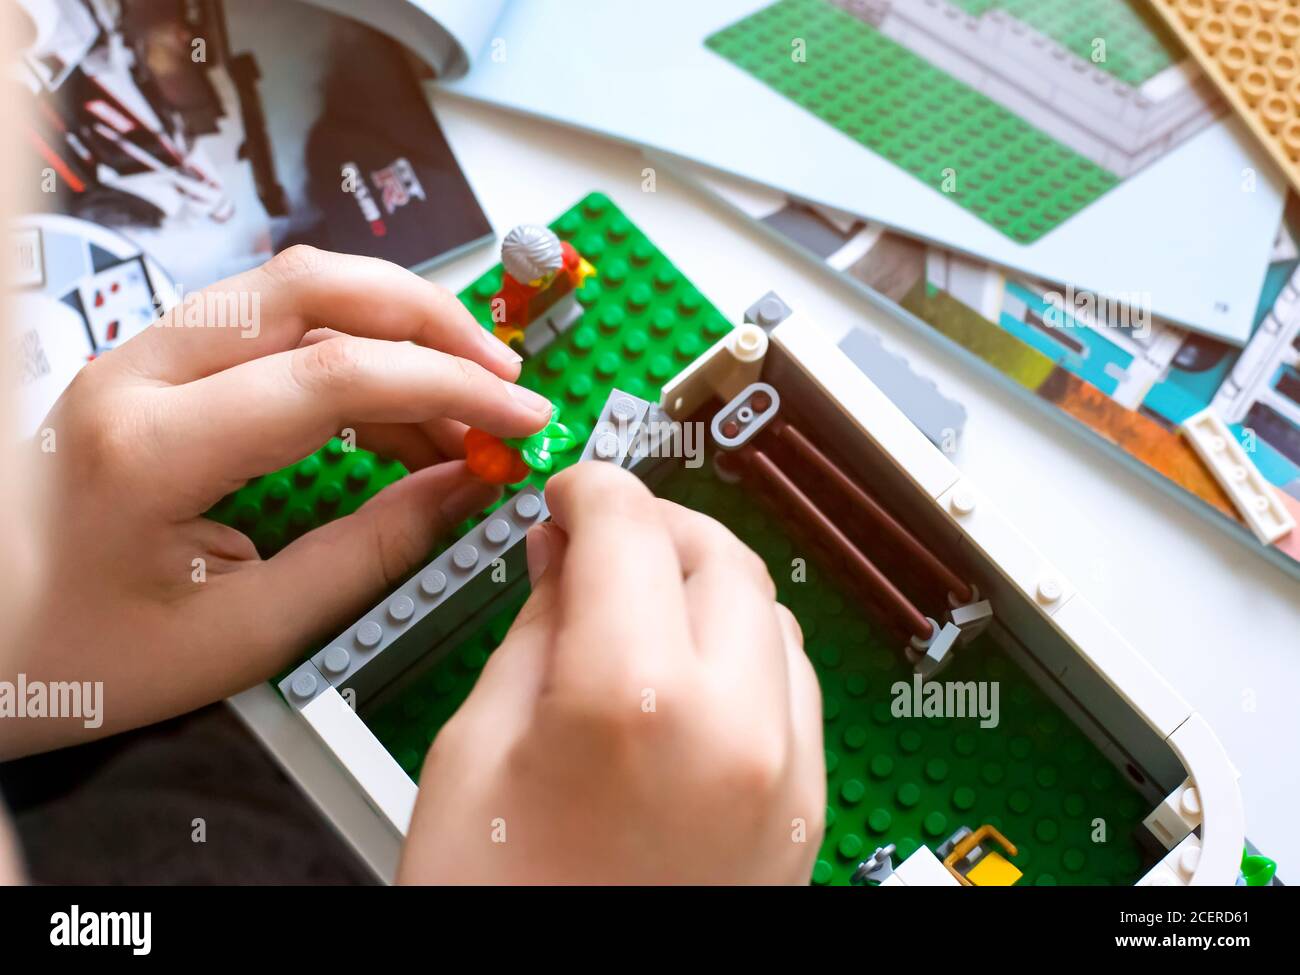 Tambov, Federazione Russa - 20 Giugno 2020 Bambino costruzione casa Lego sul tavolo con libri di istruzioni. Profondità di campo poco profonda Foto Stock